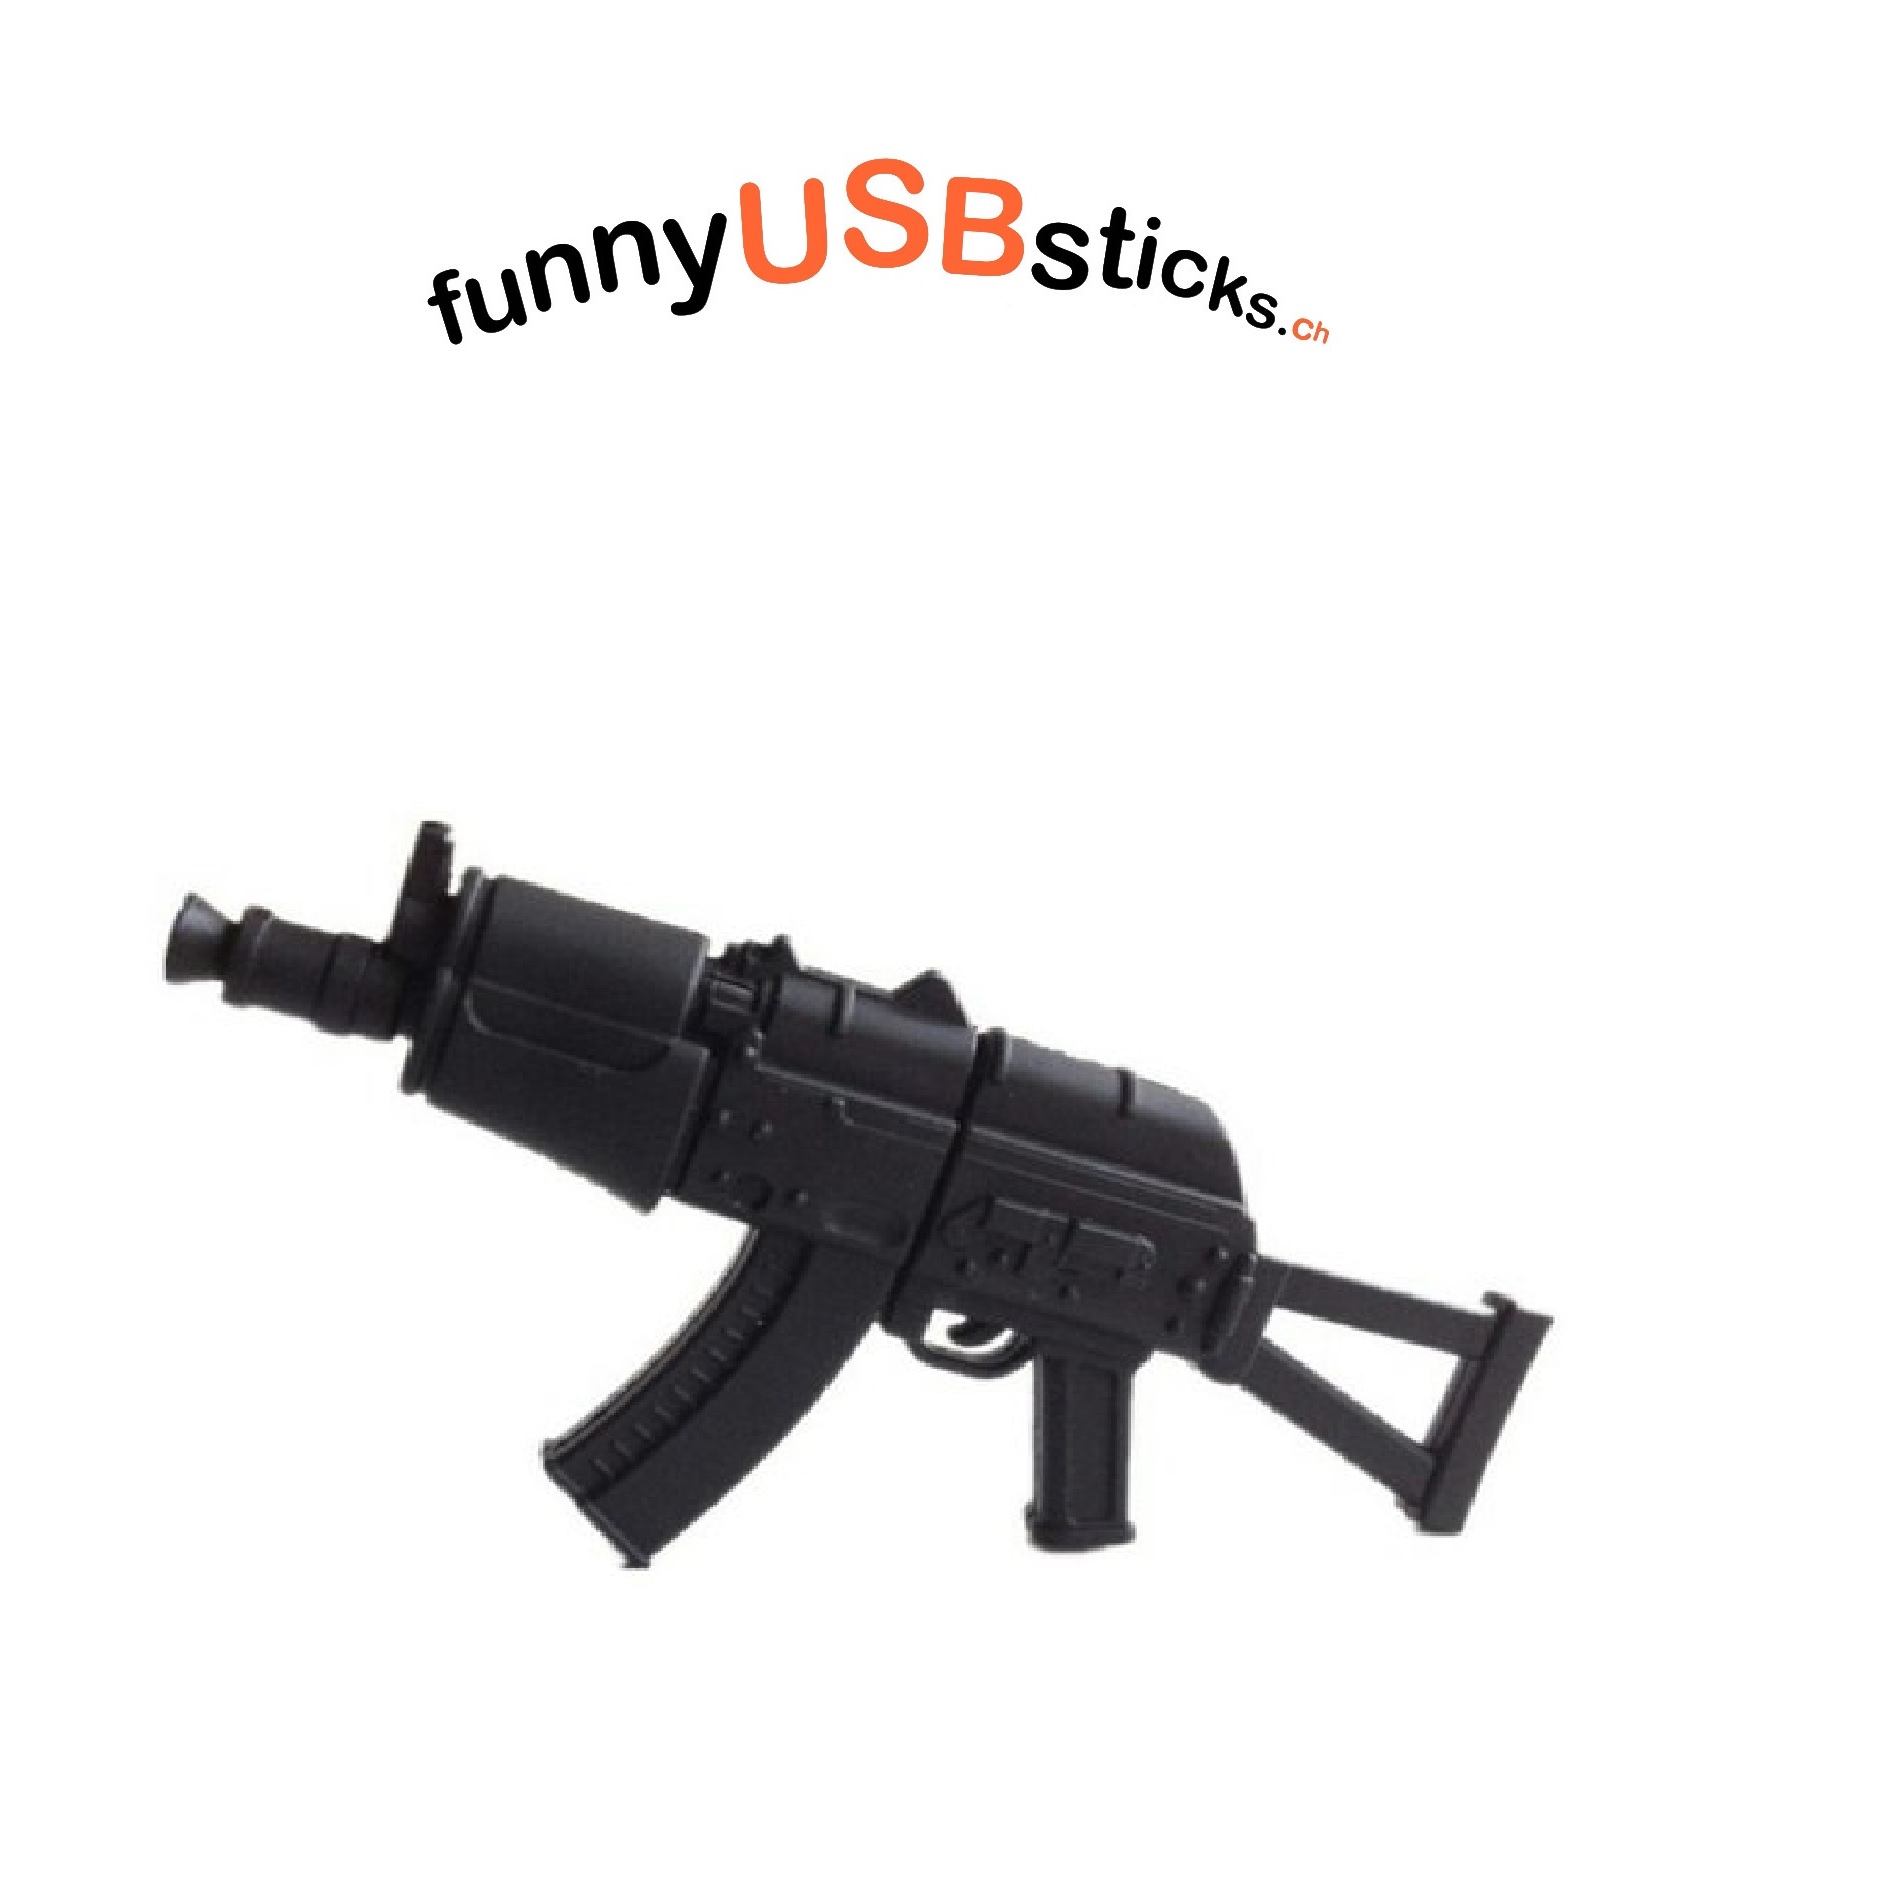 Clé USB AK-47